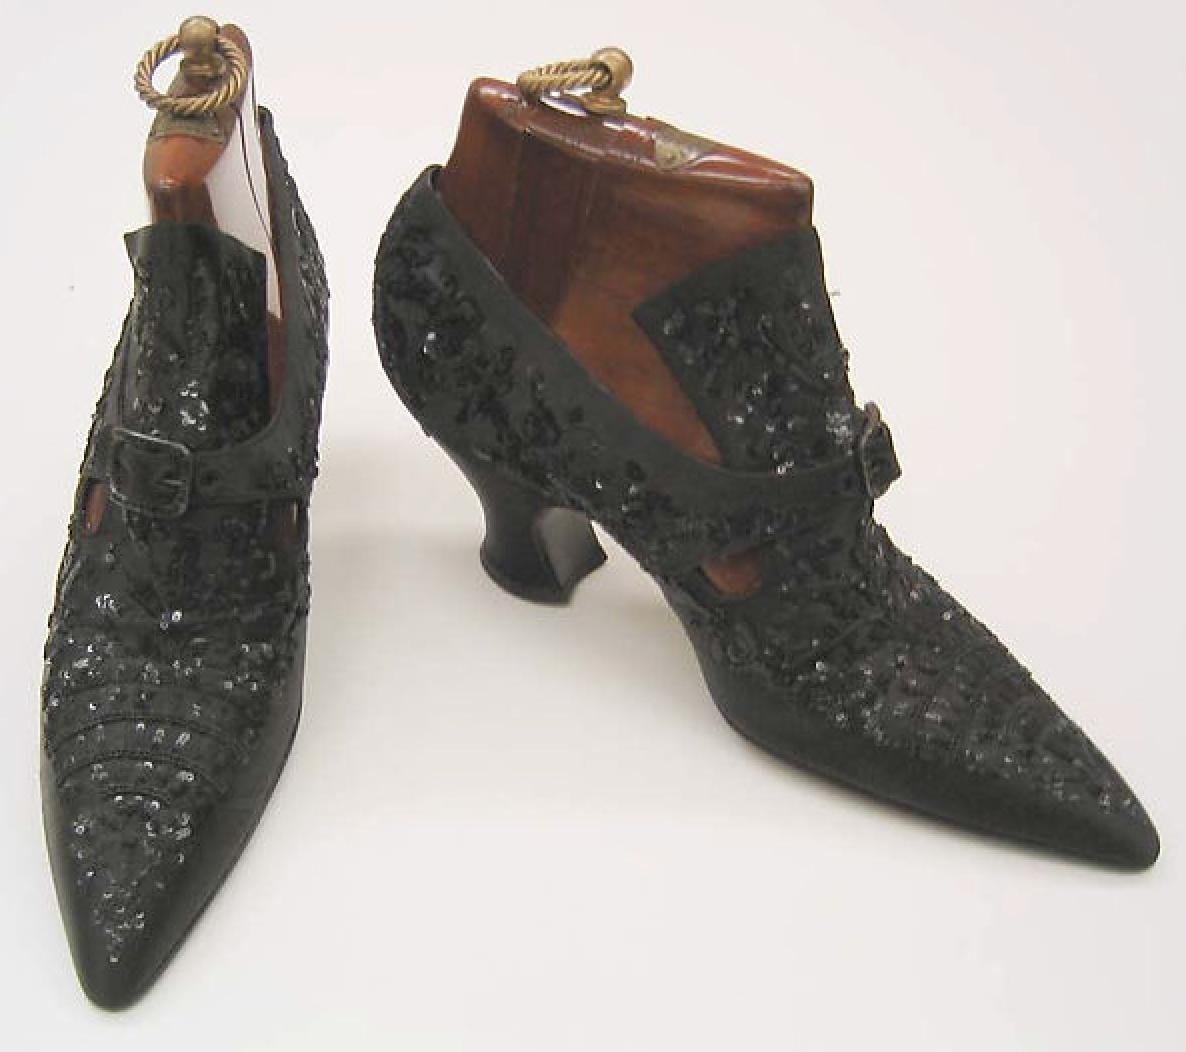 Чиривички. Обувь Барокко 17 век Клюши. Пьетро Янторни обувь. Обувь викторианской эпохи 19 век. Обувь эдвардианской эпохи.